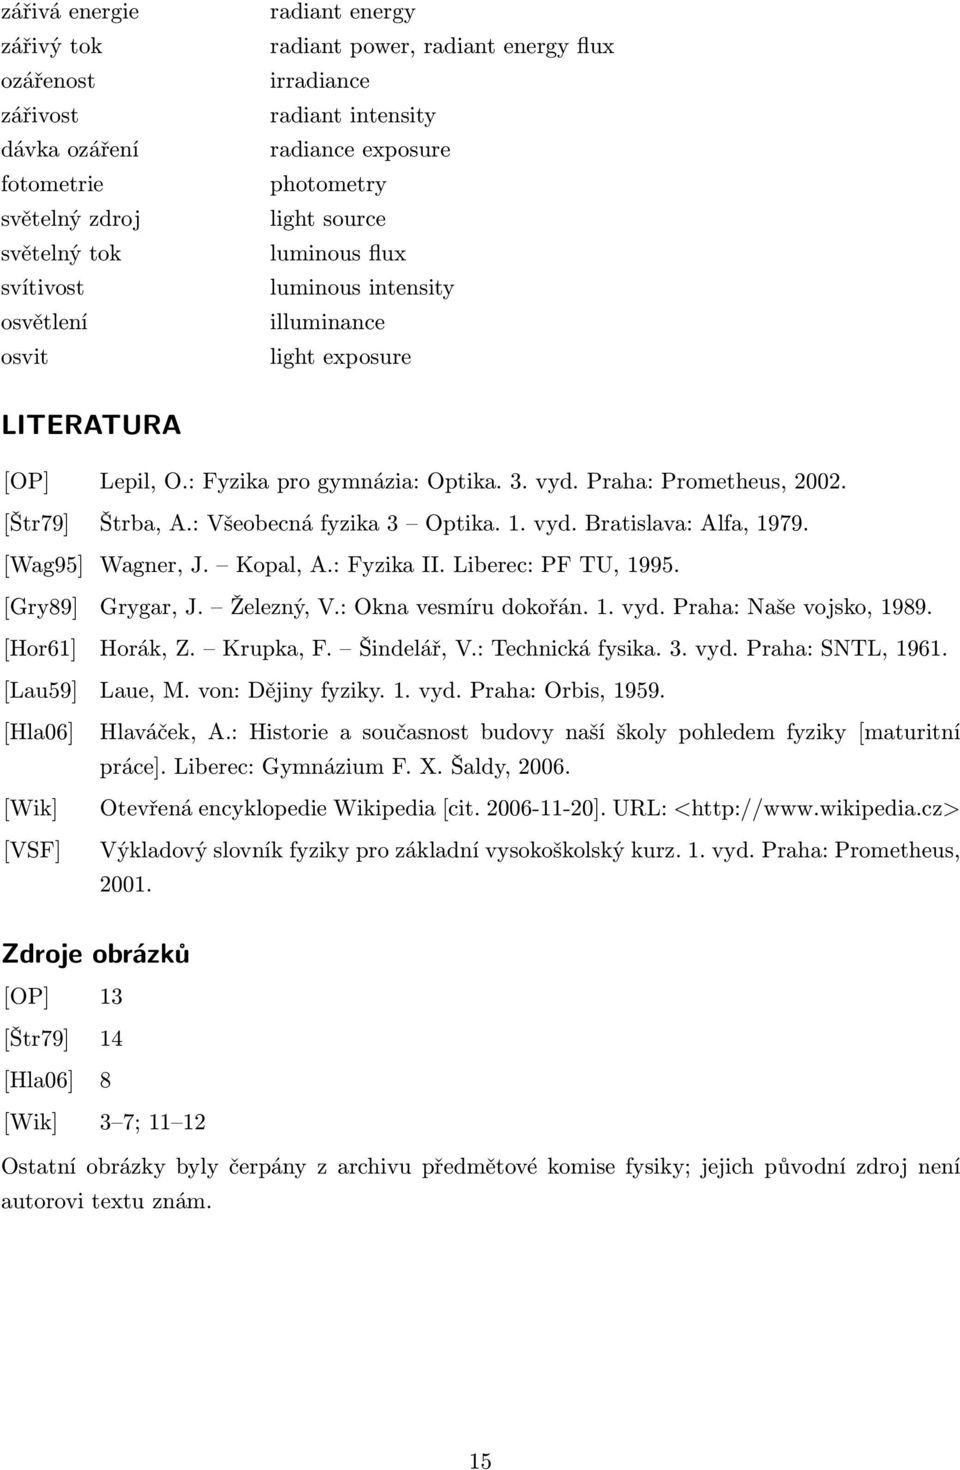 [Štr79] Štrba, A.: Všeobecná fyzika 3 Optika. 1. vyd. Bratislava: Alfa, 1979. [Wag95] Wagner, J. Kopal, A.: Fyzika II. Liberec: PF TU, 1995. [Gry89] Grygar, J. Železný, V.: Okna vesmíru dokořán. 1. vyd. Praha: Naše vojsko, 1989.